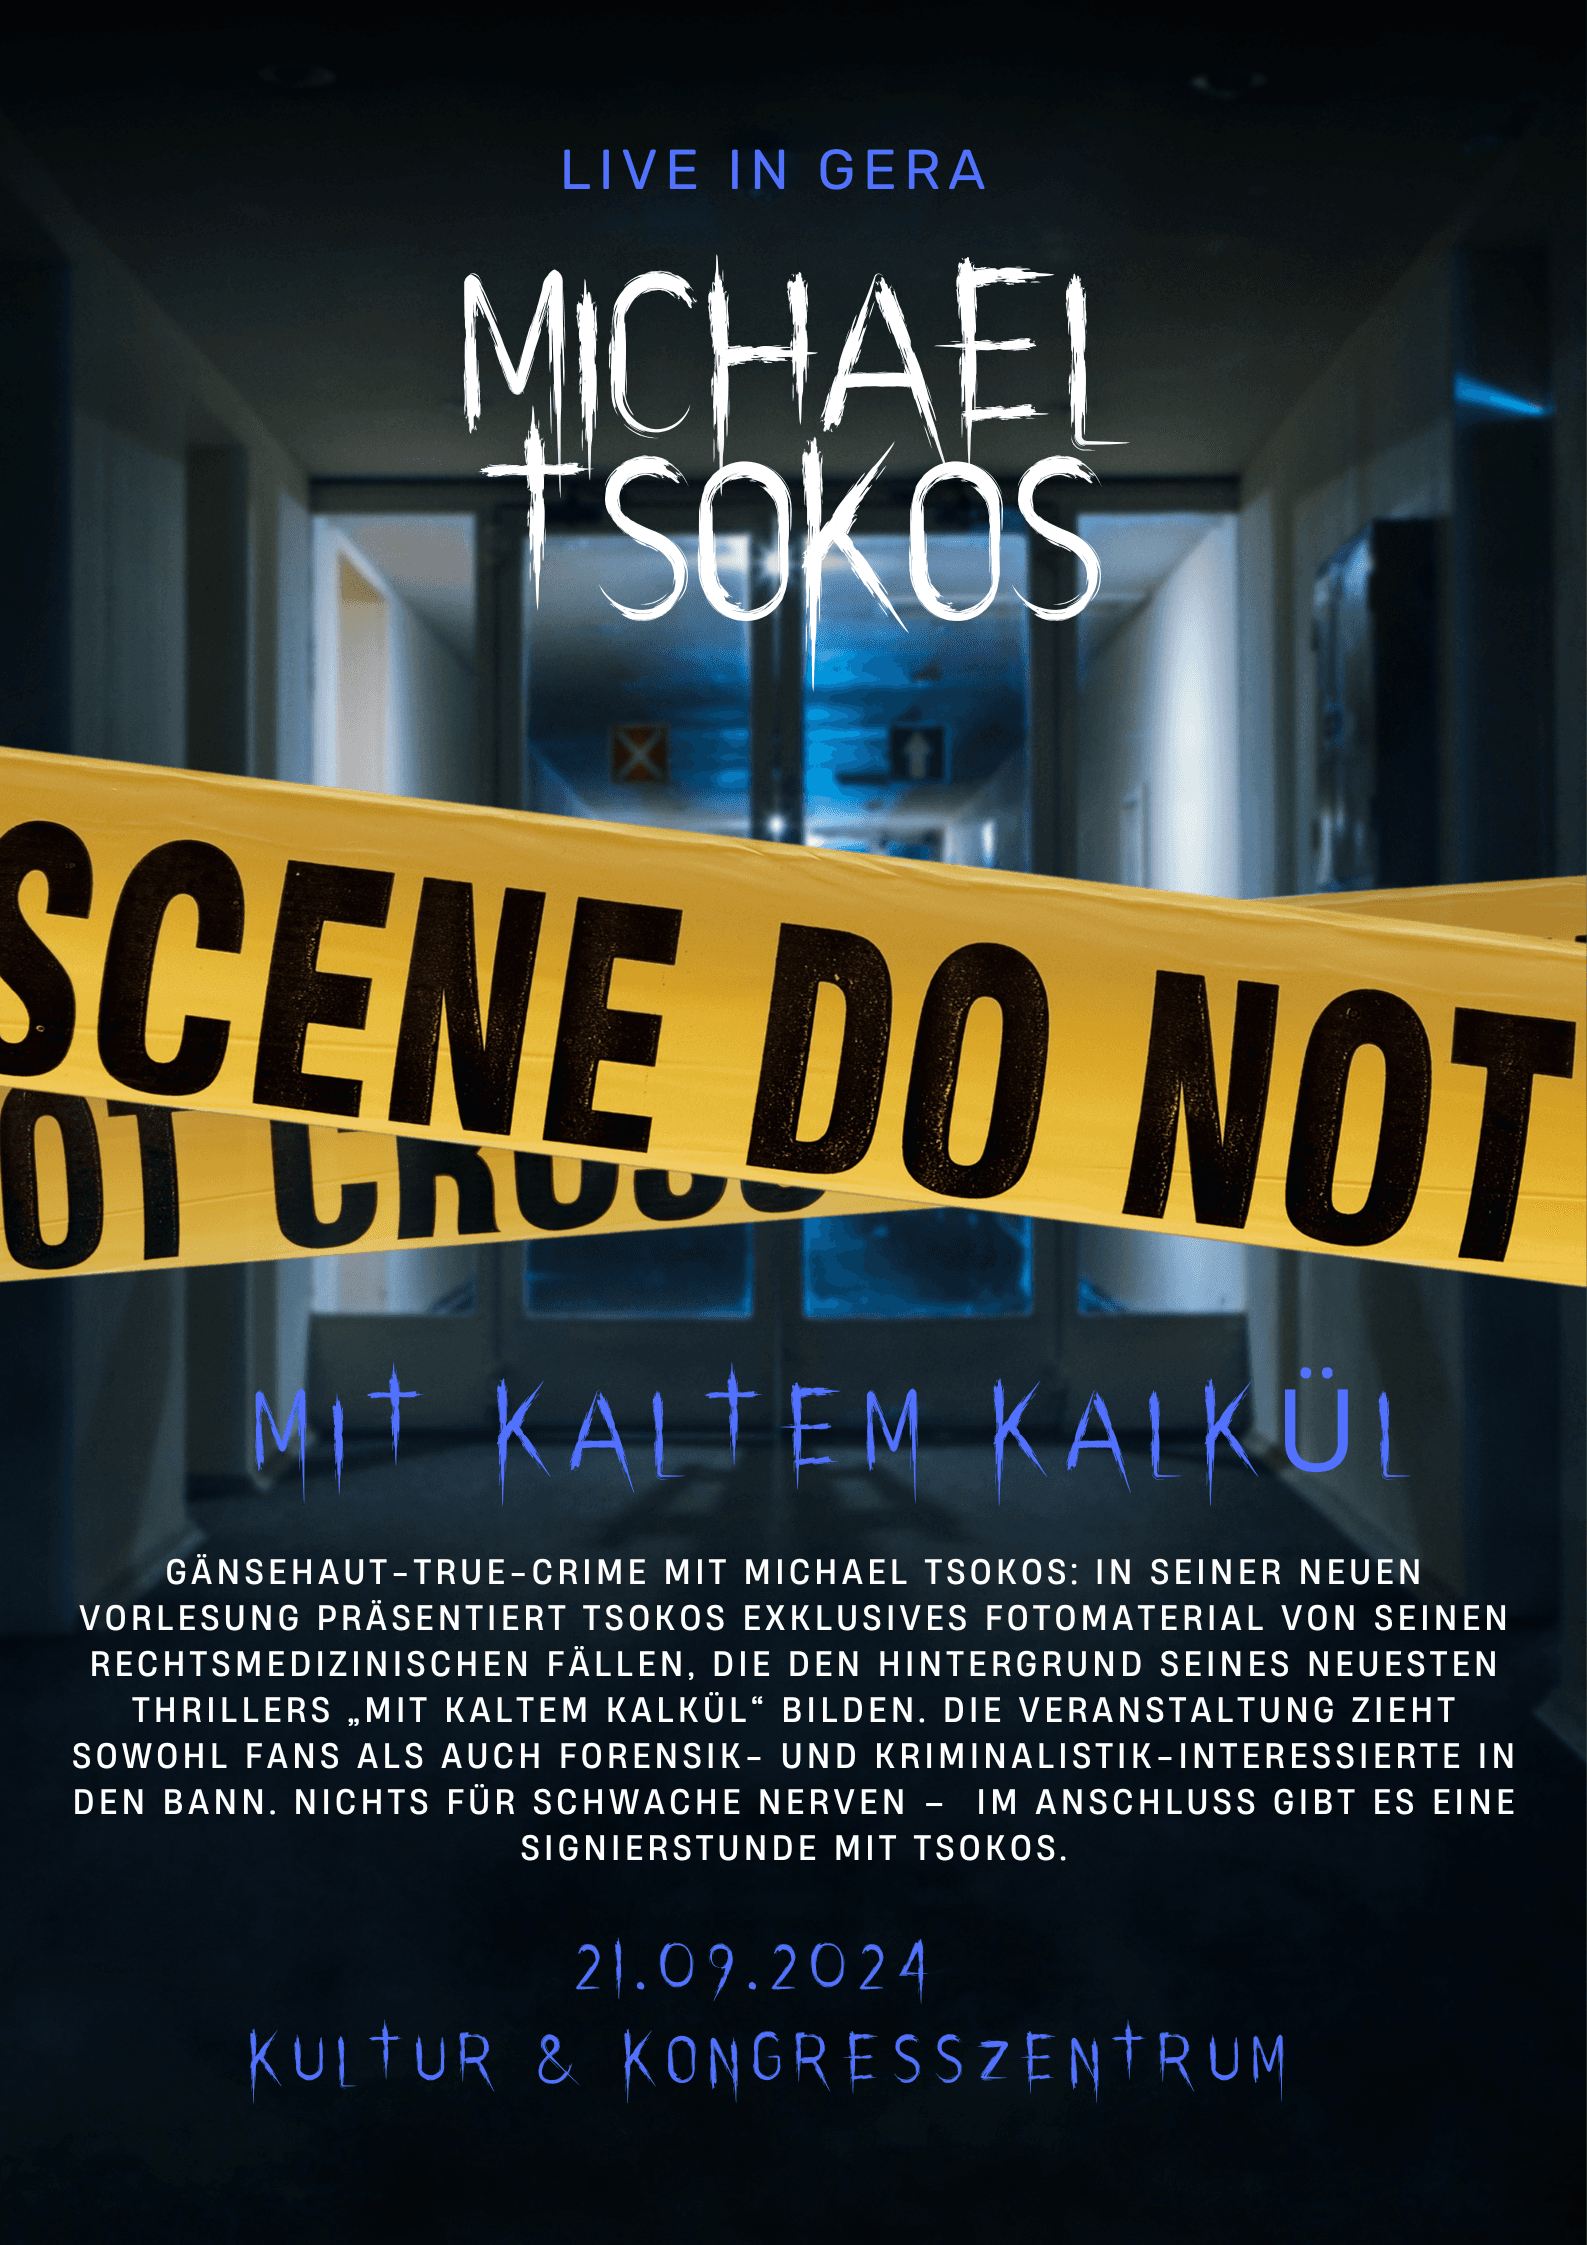 Michael Tsokos - True-Crime - Lesung zum Thriller "Mit kaltem Kalkül" am 21.09.2024 im KuK